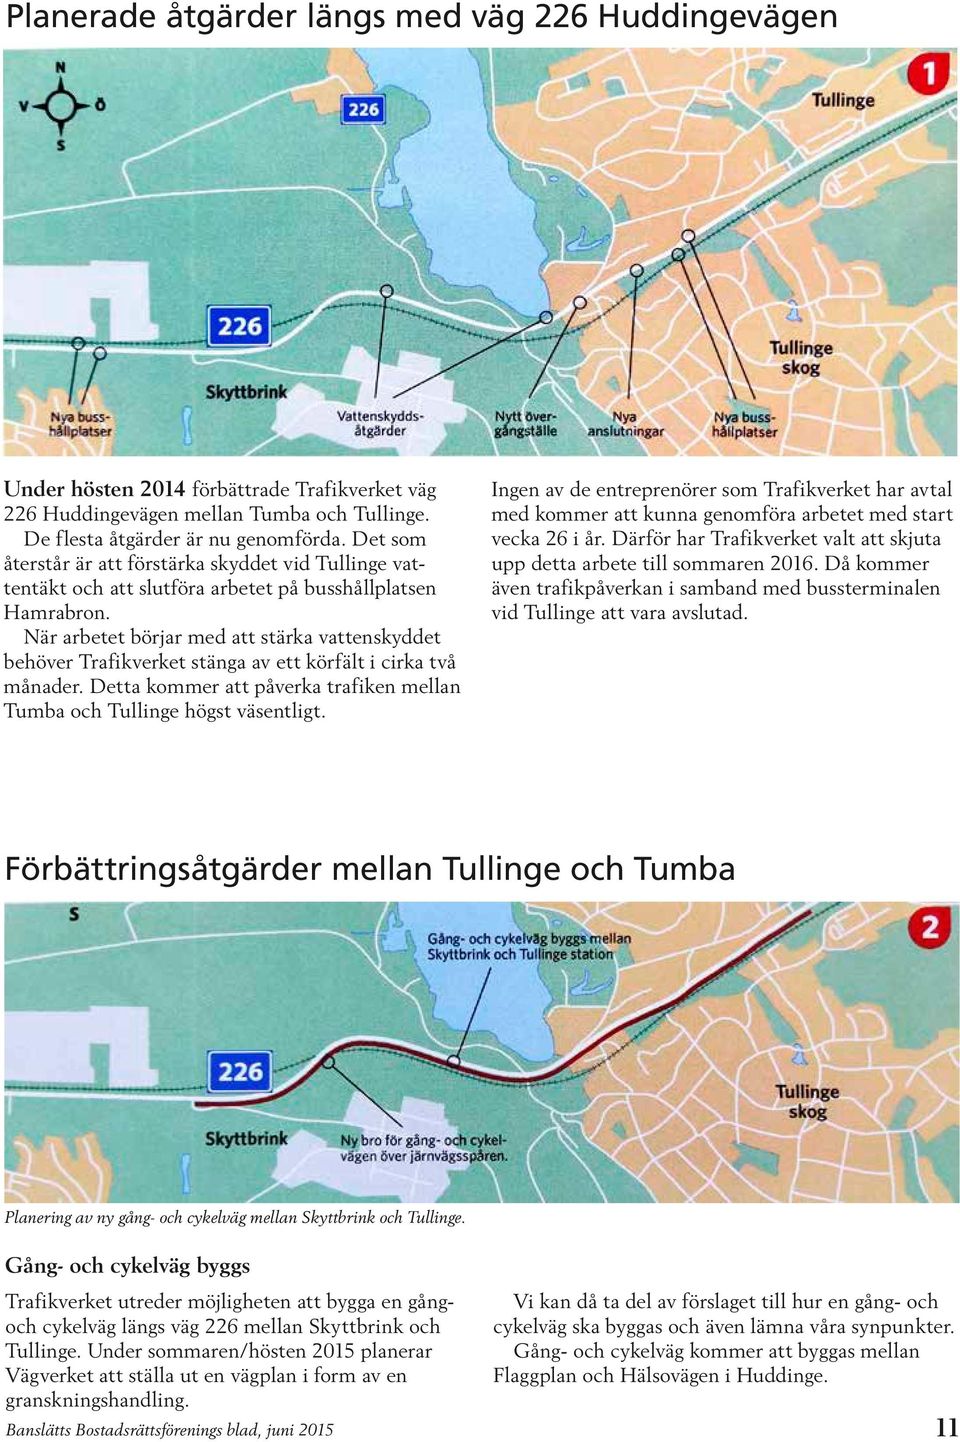 När arbetet börjar med att stärka vattenskyddet behöver Trafikverket stänga av ett körfält i cirka två månader. Detta kommer att påverka trafiken mellan Tumba och Tullinge högst väsentligt.